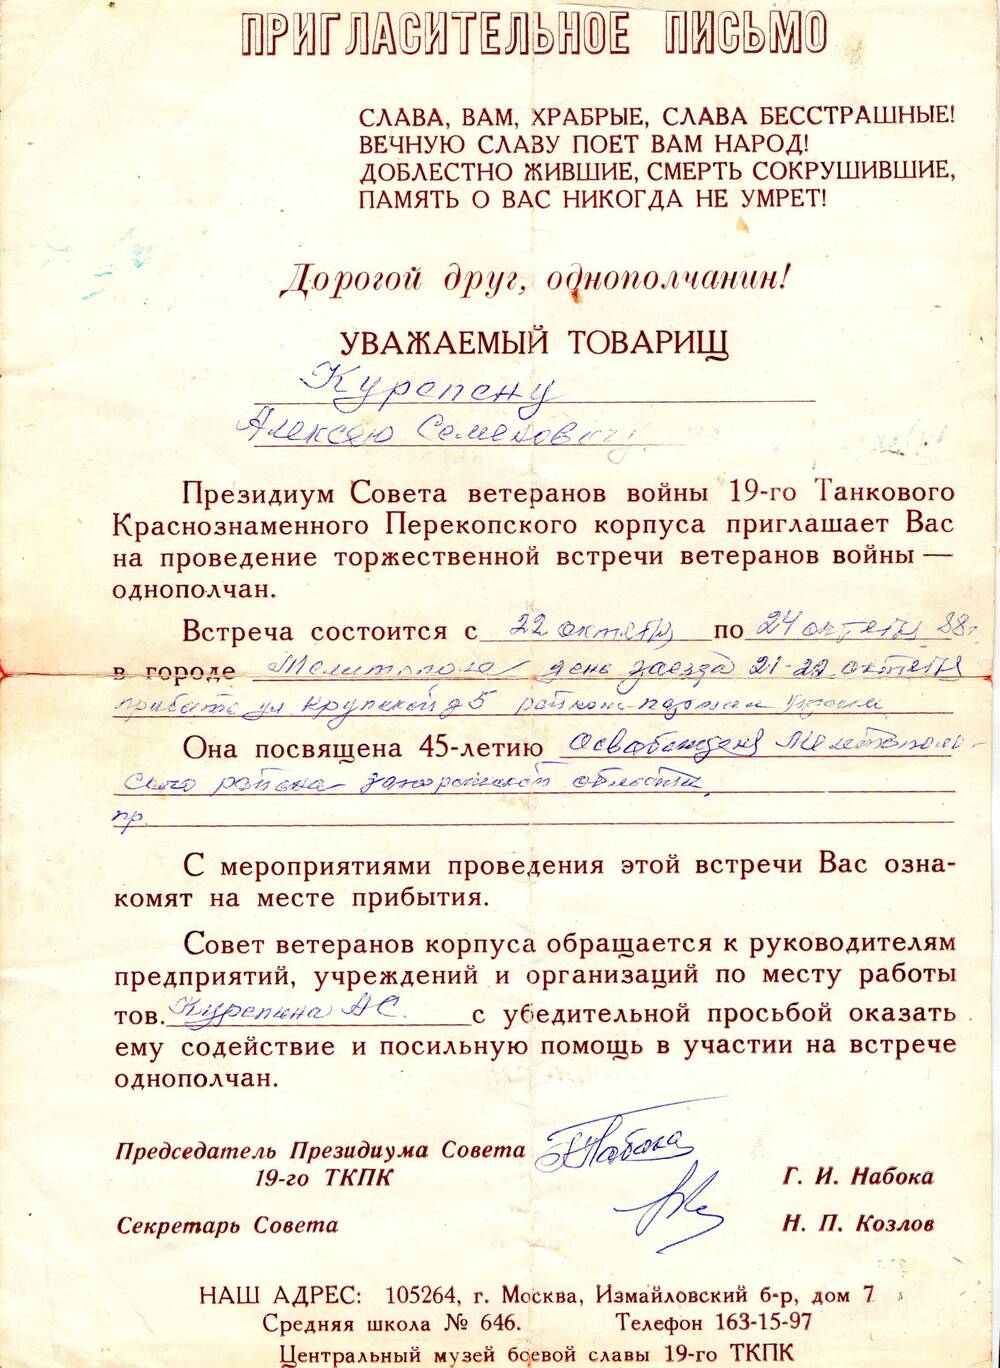 Пригласительное письмо Курепину Алексею Семеновичу  на проведение торжественной встречи ветеранов войны